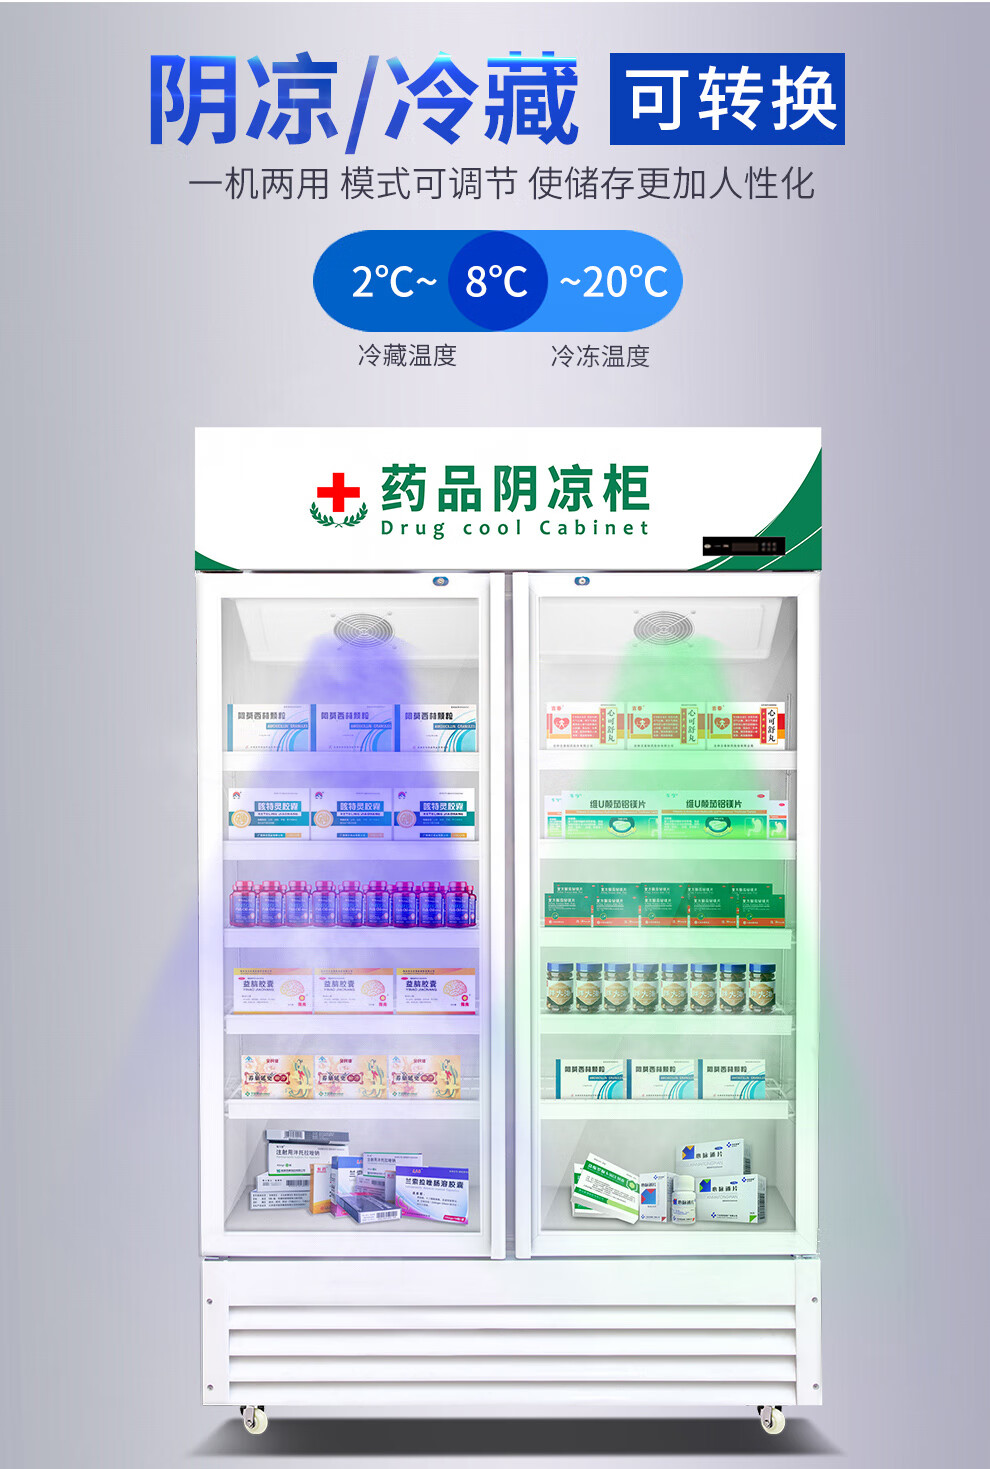 众夏 药品阴凉柜冷藏柜双门 医院用单门冰箱冰柜三门展示柜 药店gsp